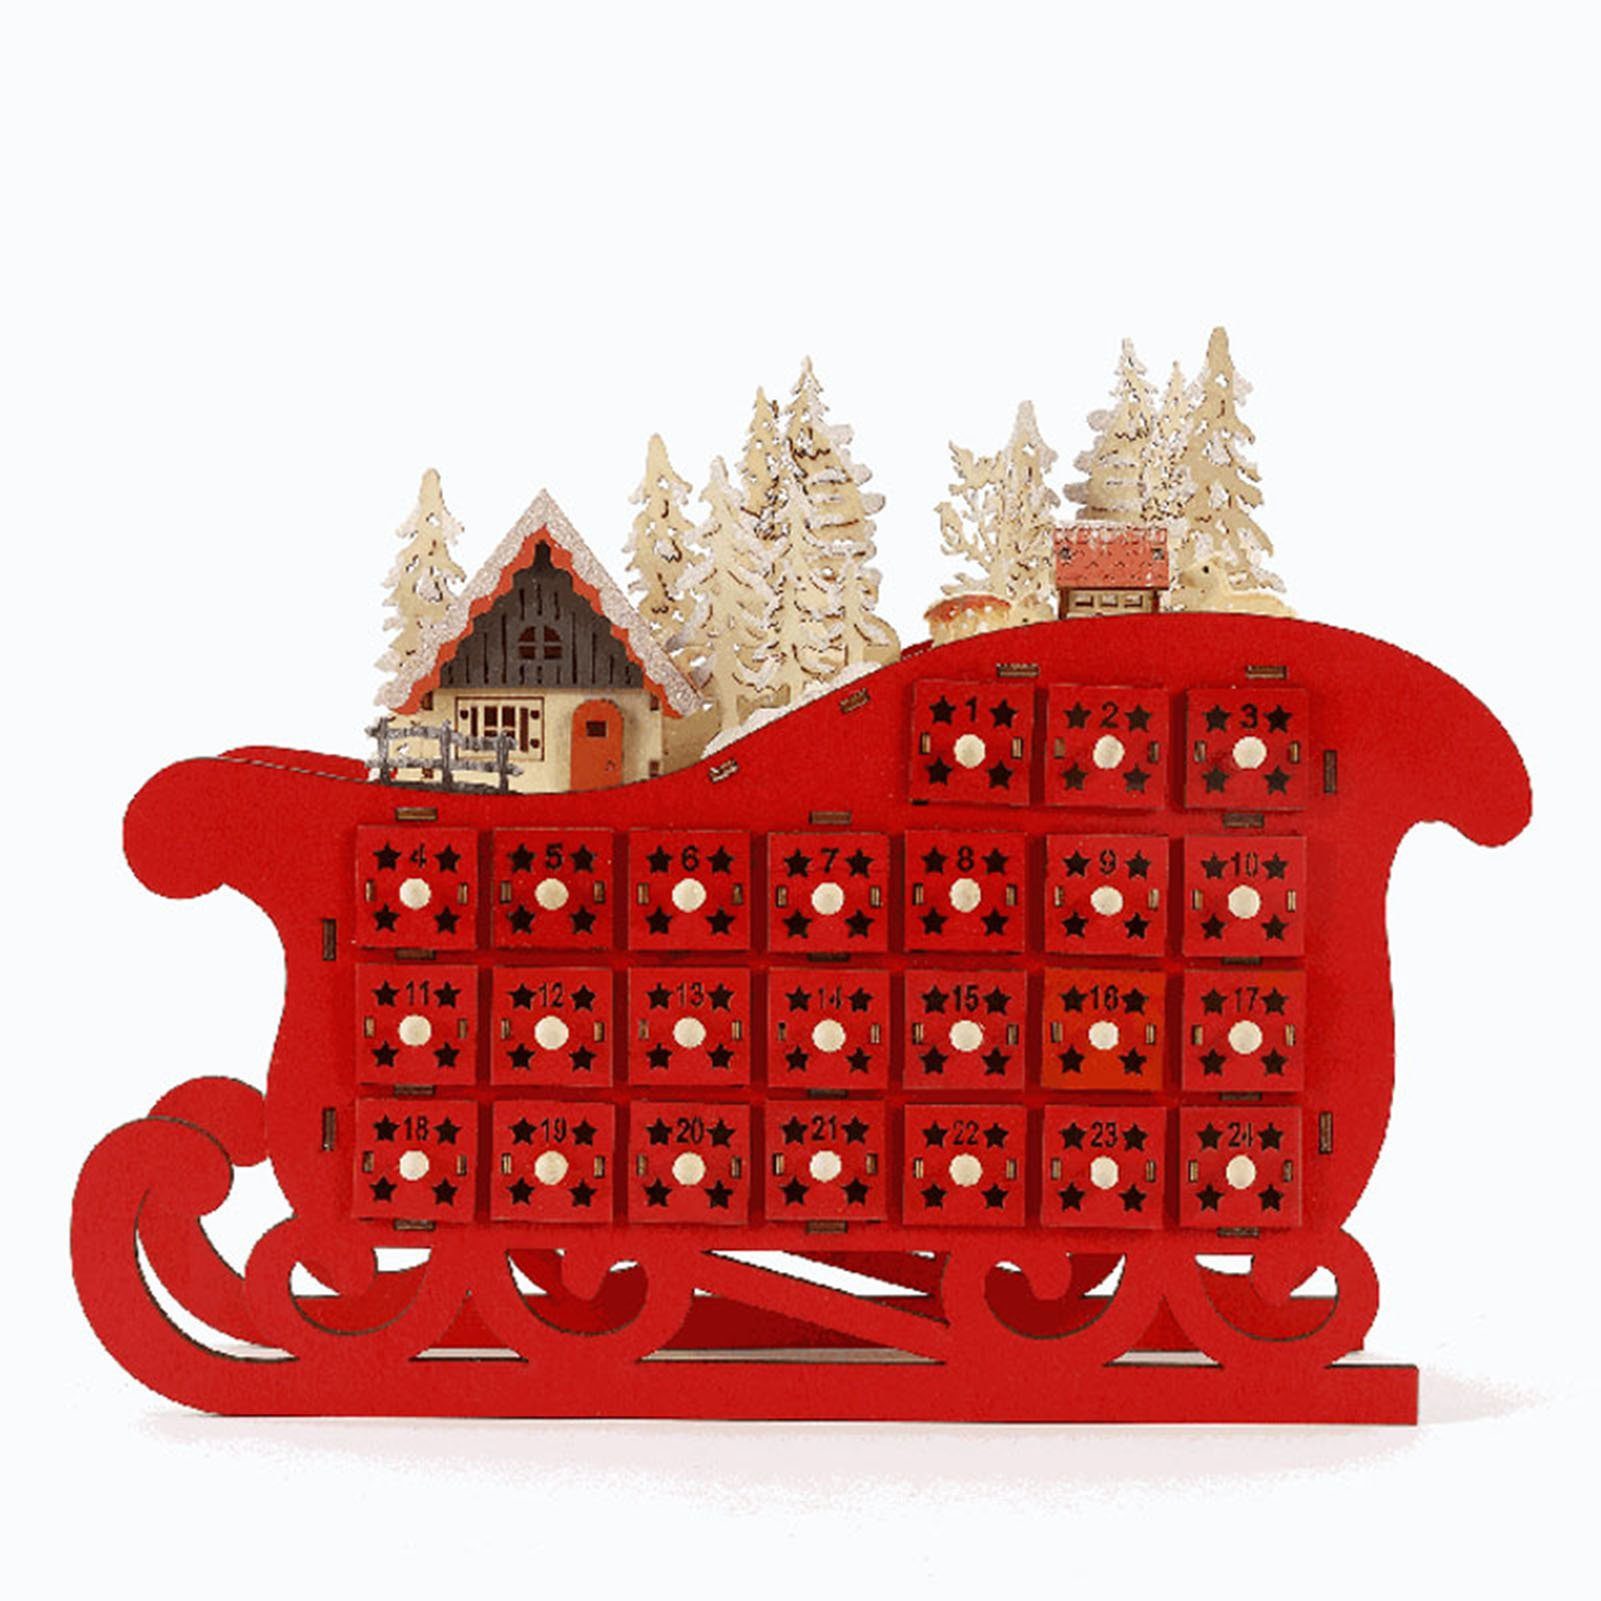 Schlittenform In 24-Tage-Weihnachts-Countdown-Kalender Blusmart Roter Adventskalender